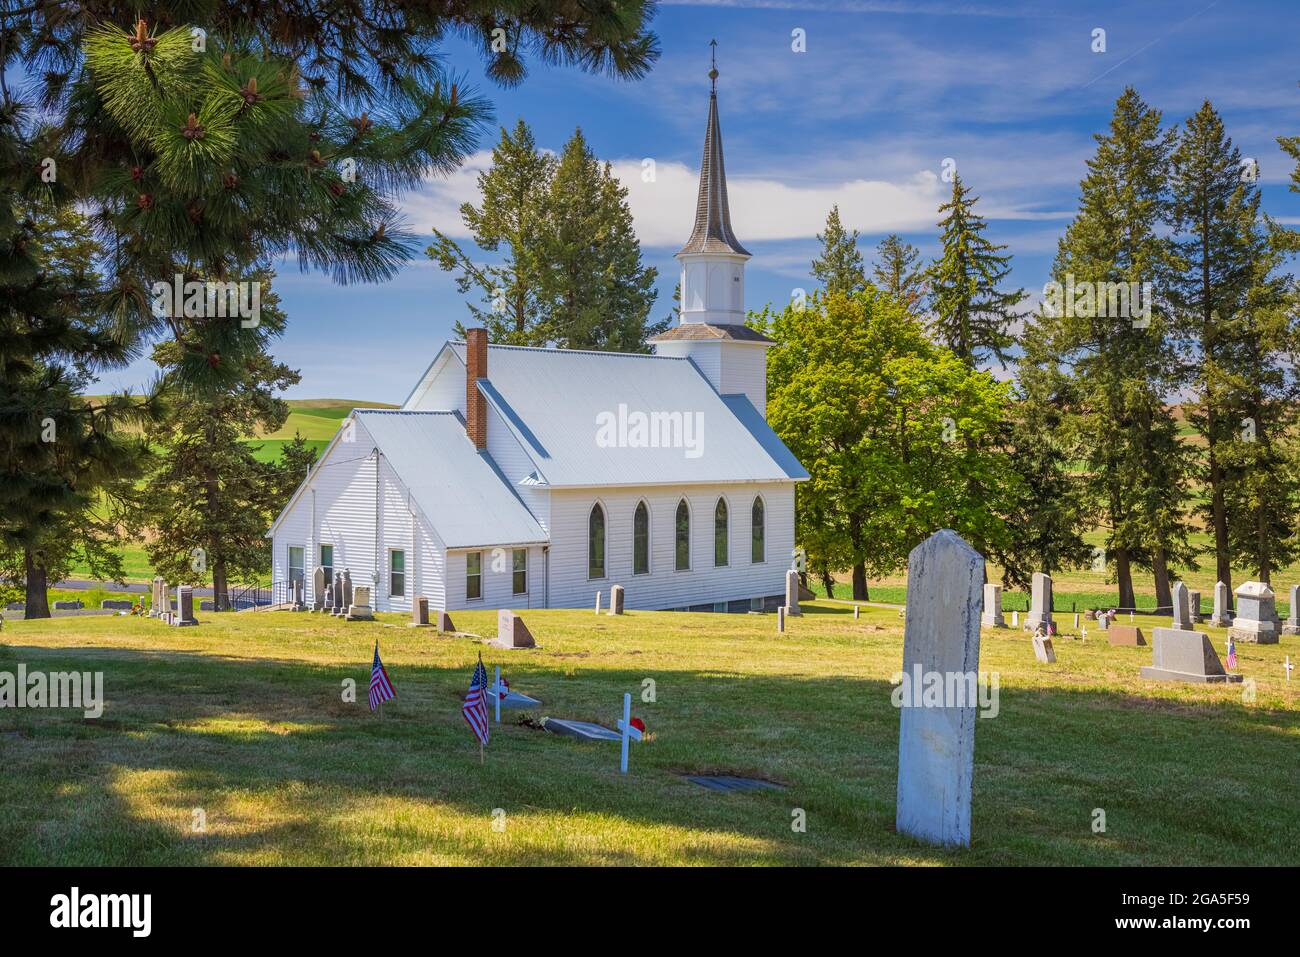 La Iglesia Luterana de Genesee Valley en Genesee, Idaho, es una congregación cristiana que sirve a la comunidad de Genesee. Foto de stock